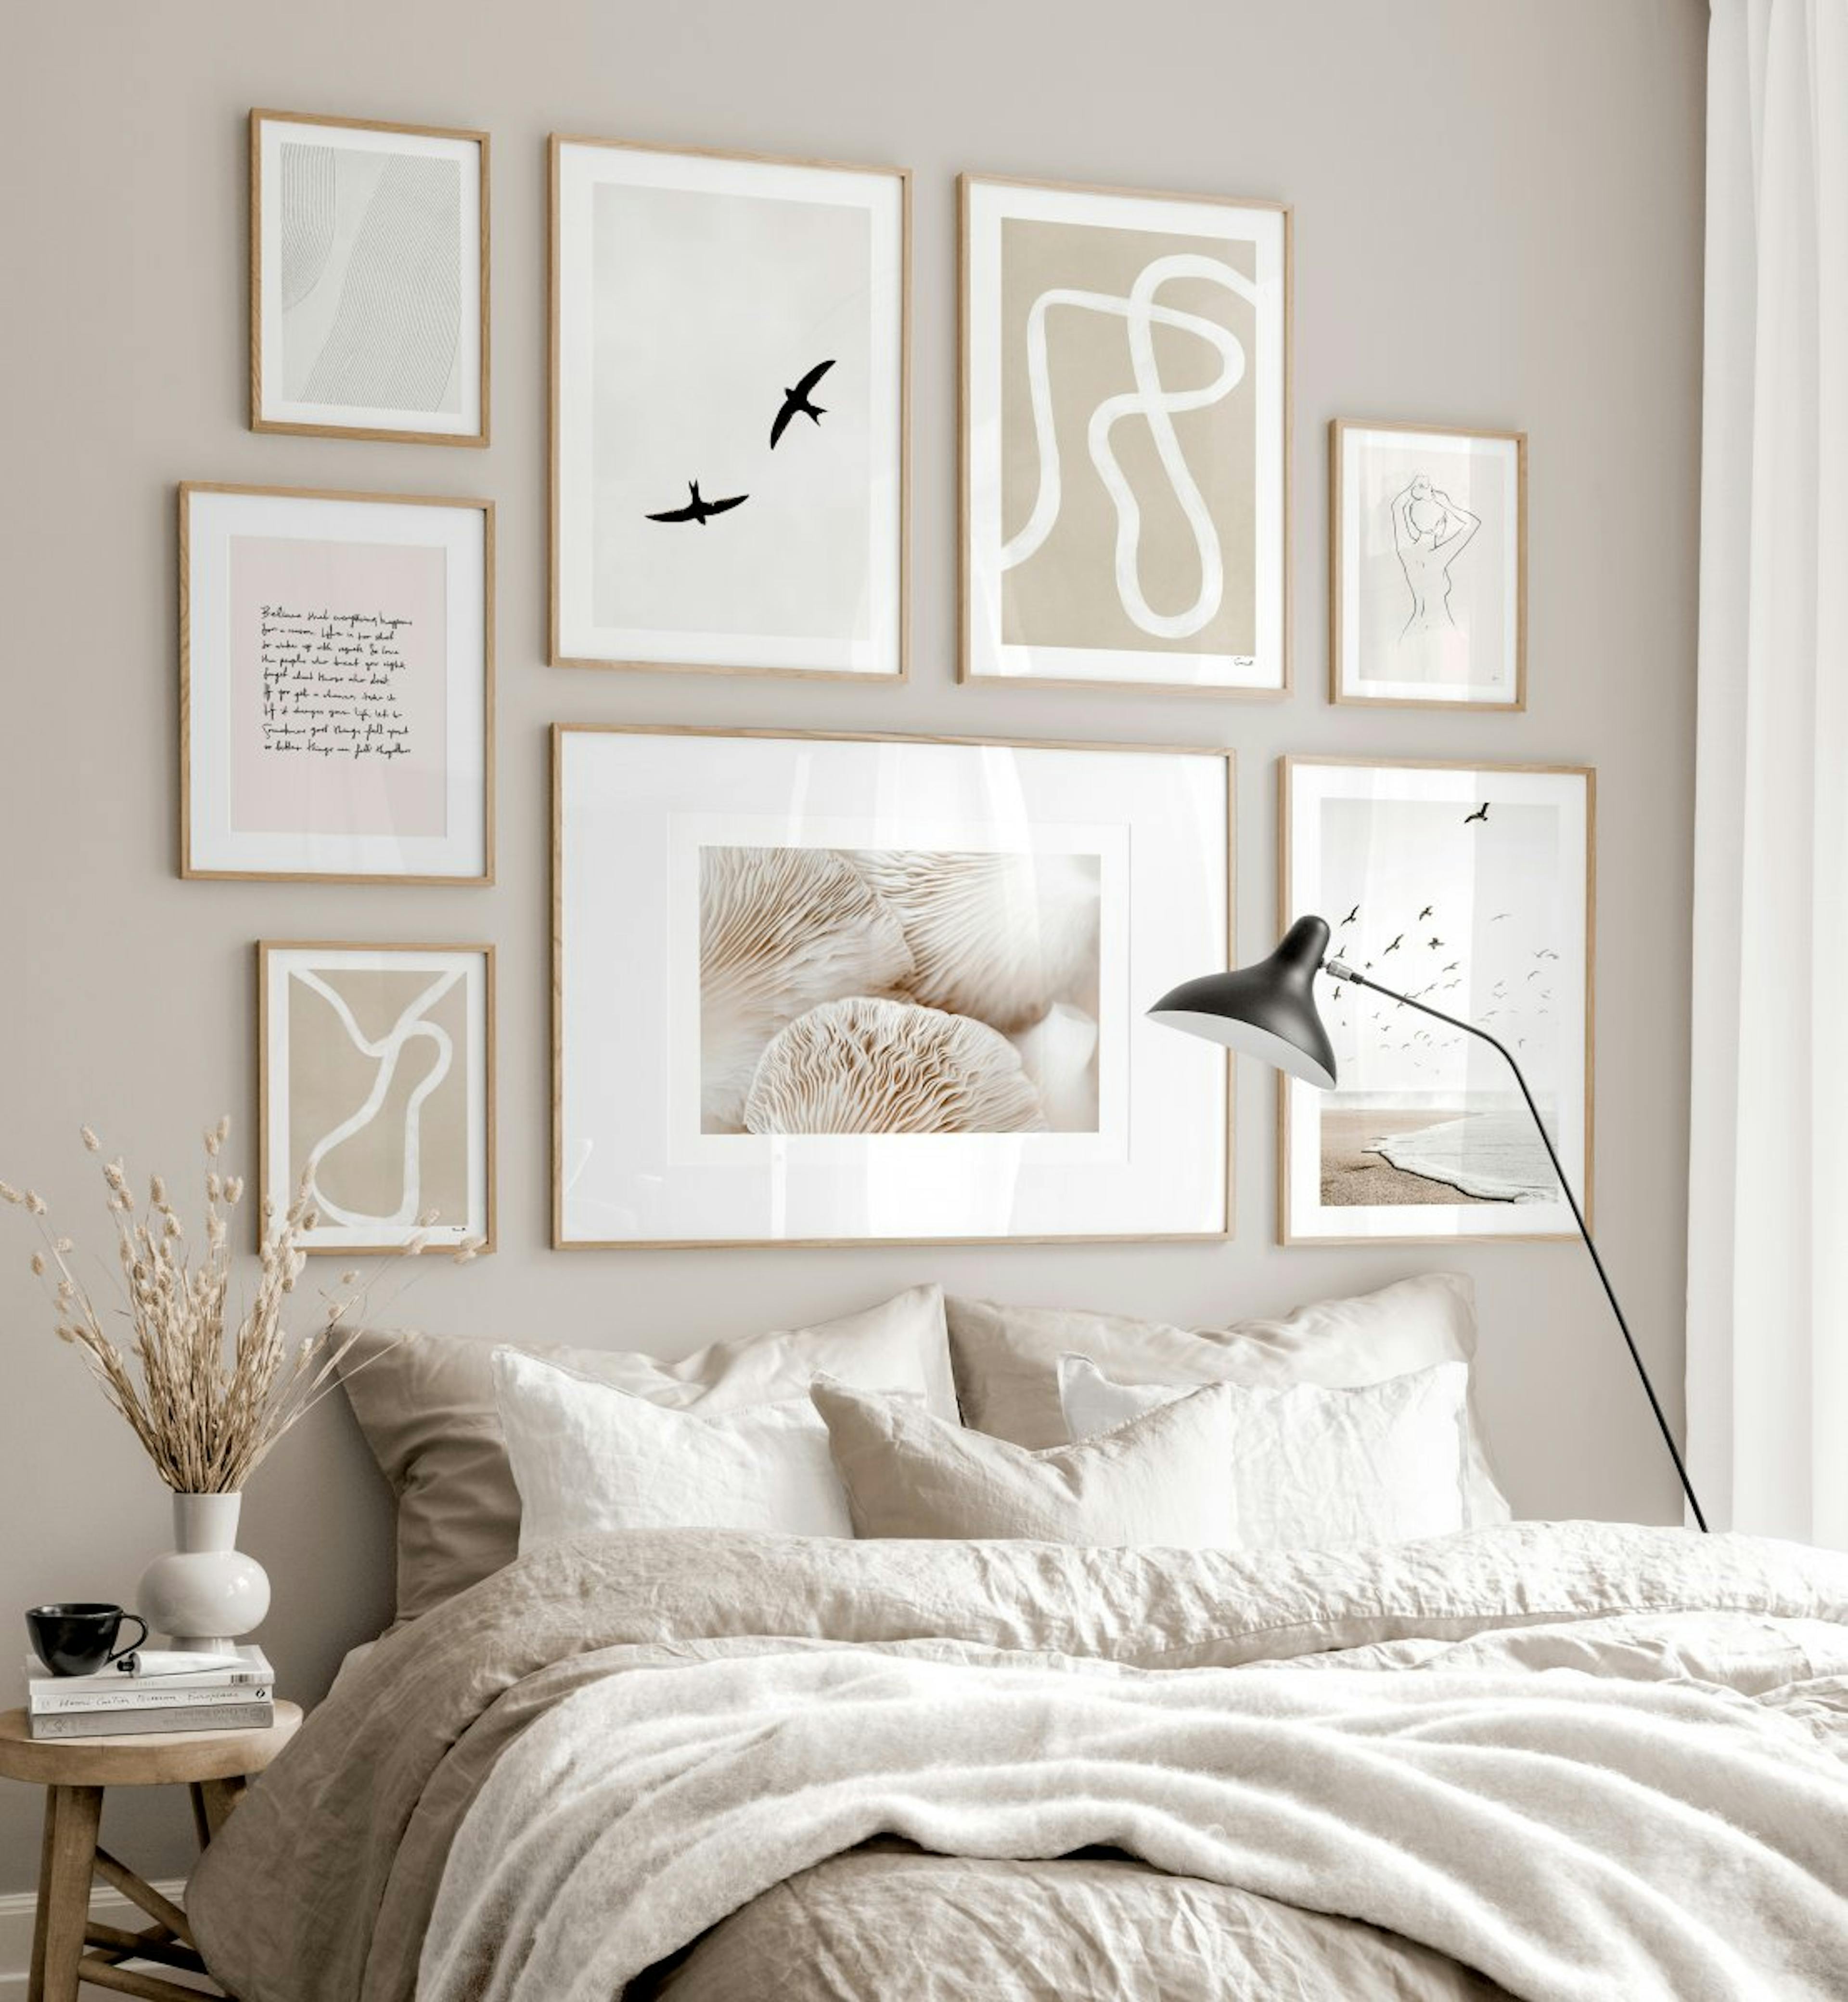 Modna galeria obrazow bezowo biala sypialnia bezowe wnetrza plakaty debowe ramki